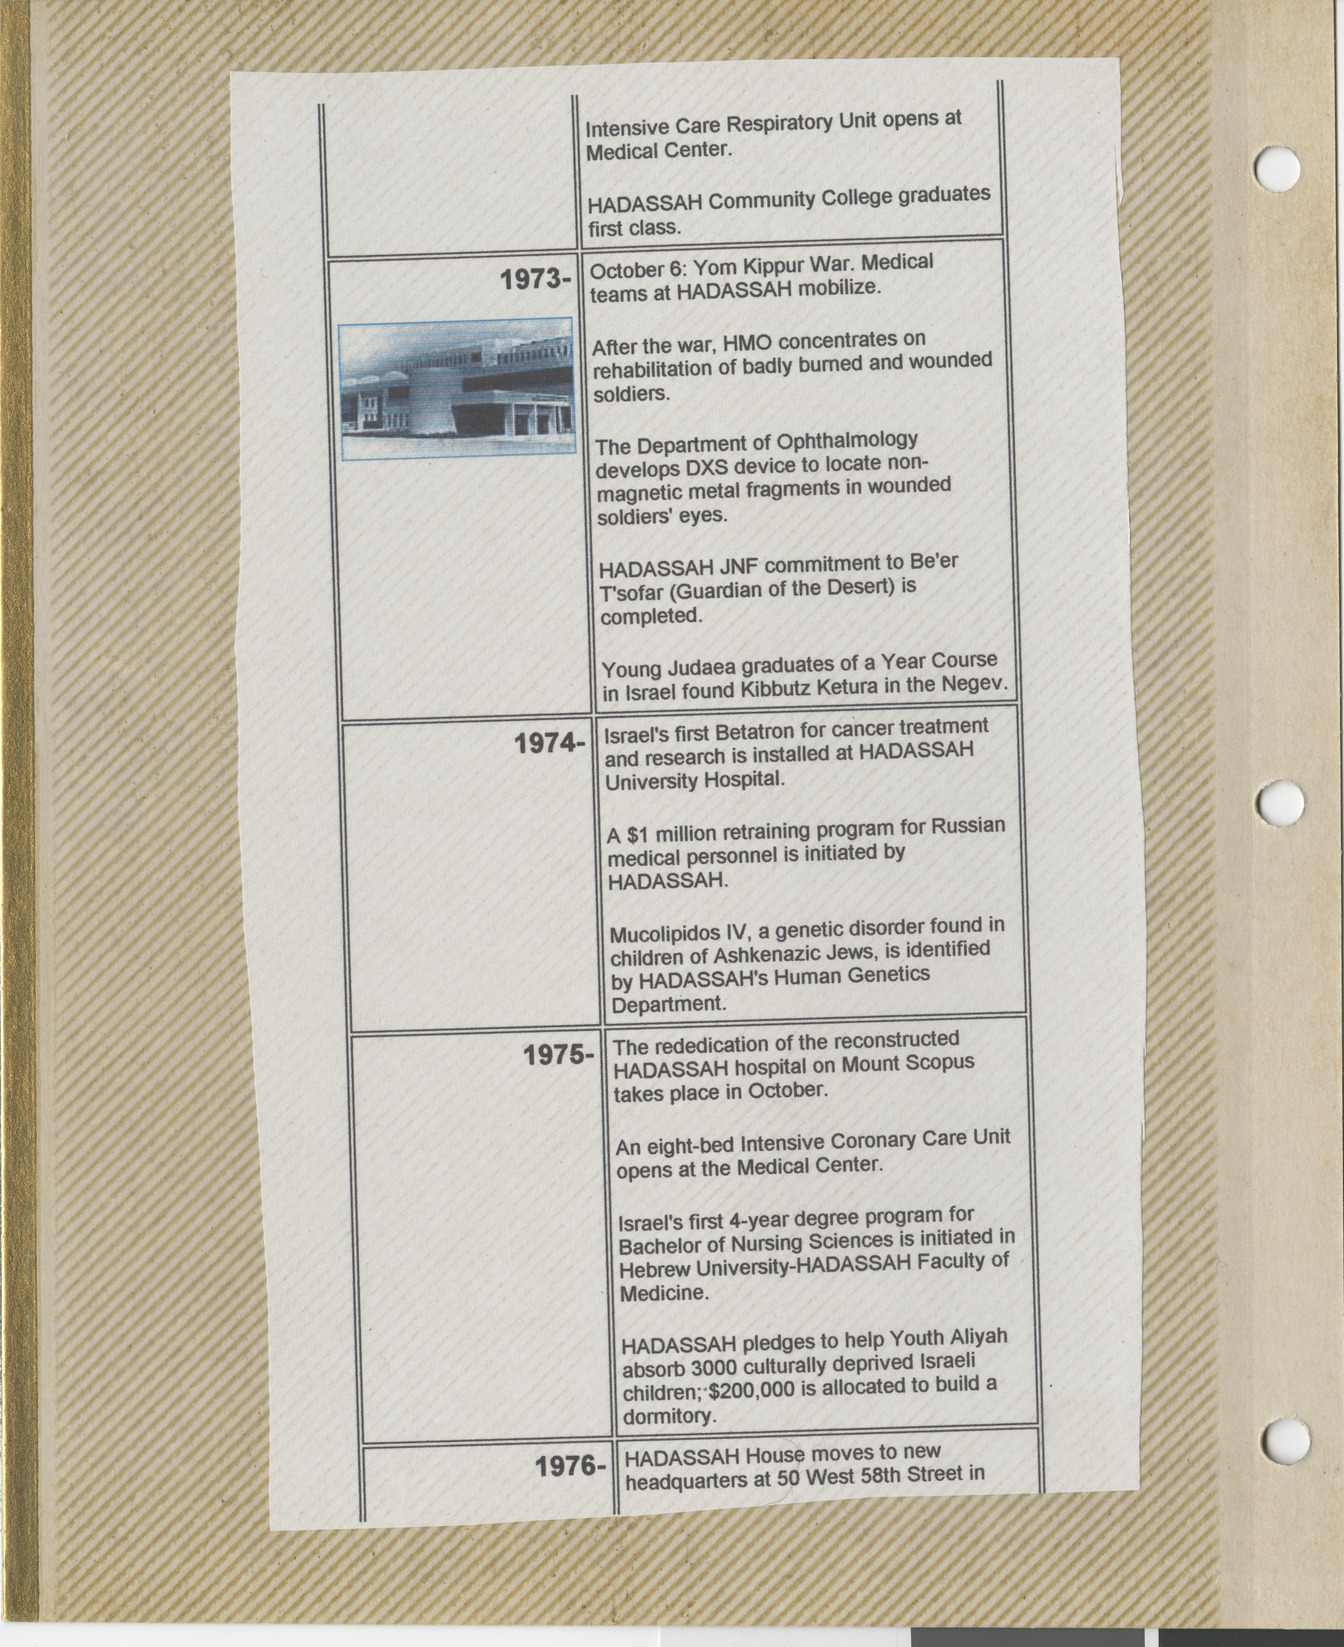 Clipping, Hadassah timeline 1973-1976